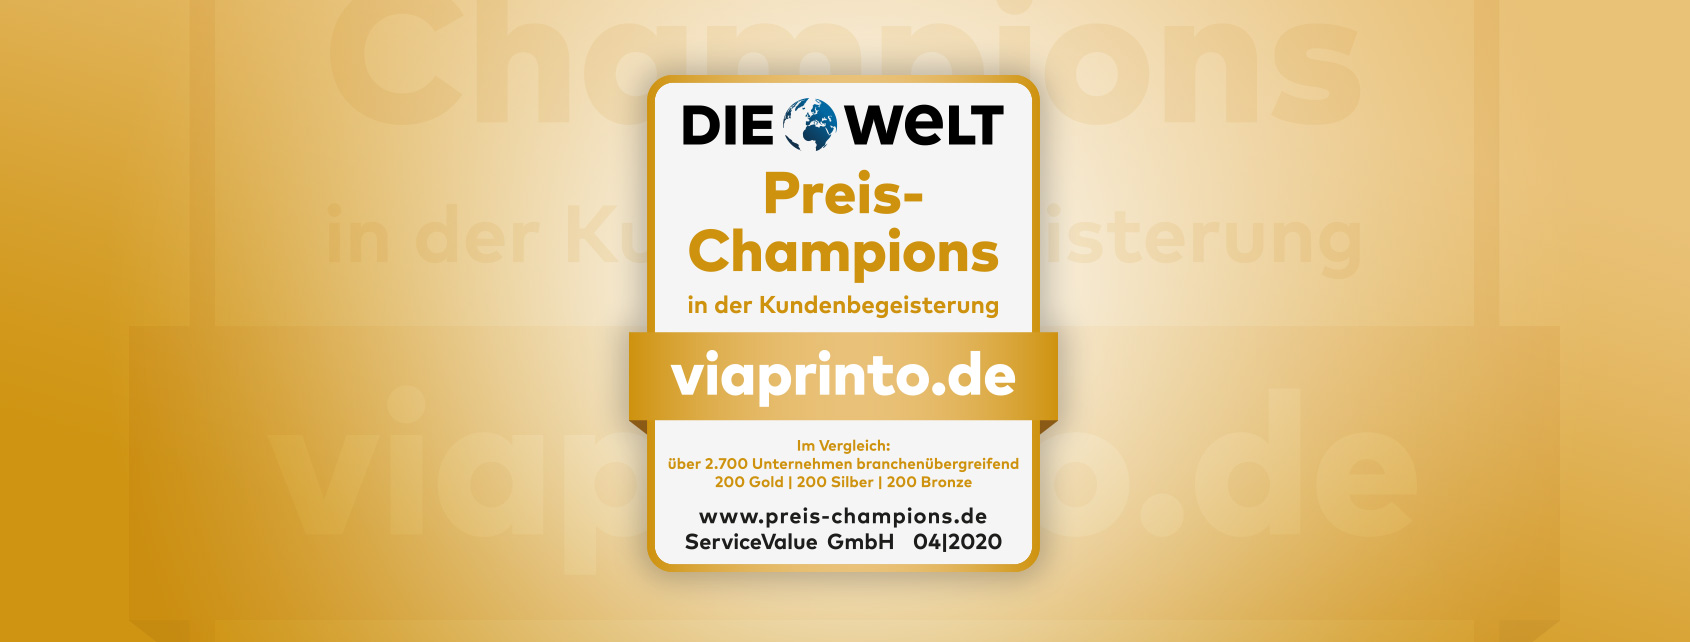 Preis-Champion viaprinto